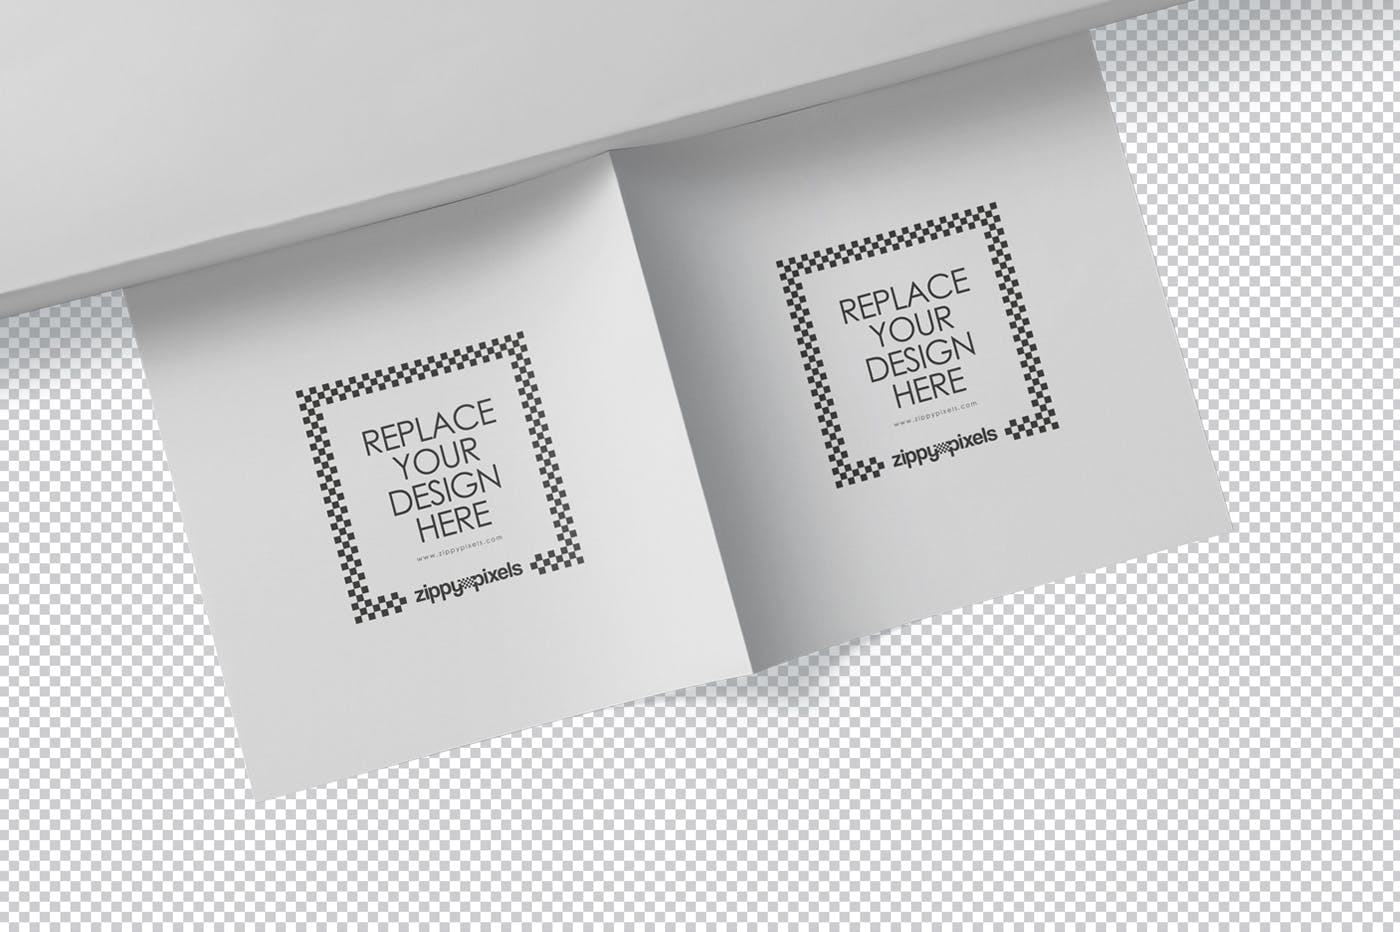 方形对折页宣传手册设计效果图样机第一素材精选 Square Bifold Brochure Mockups插图(6)